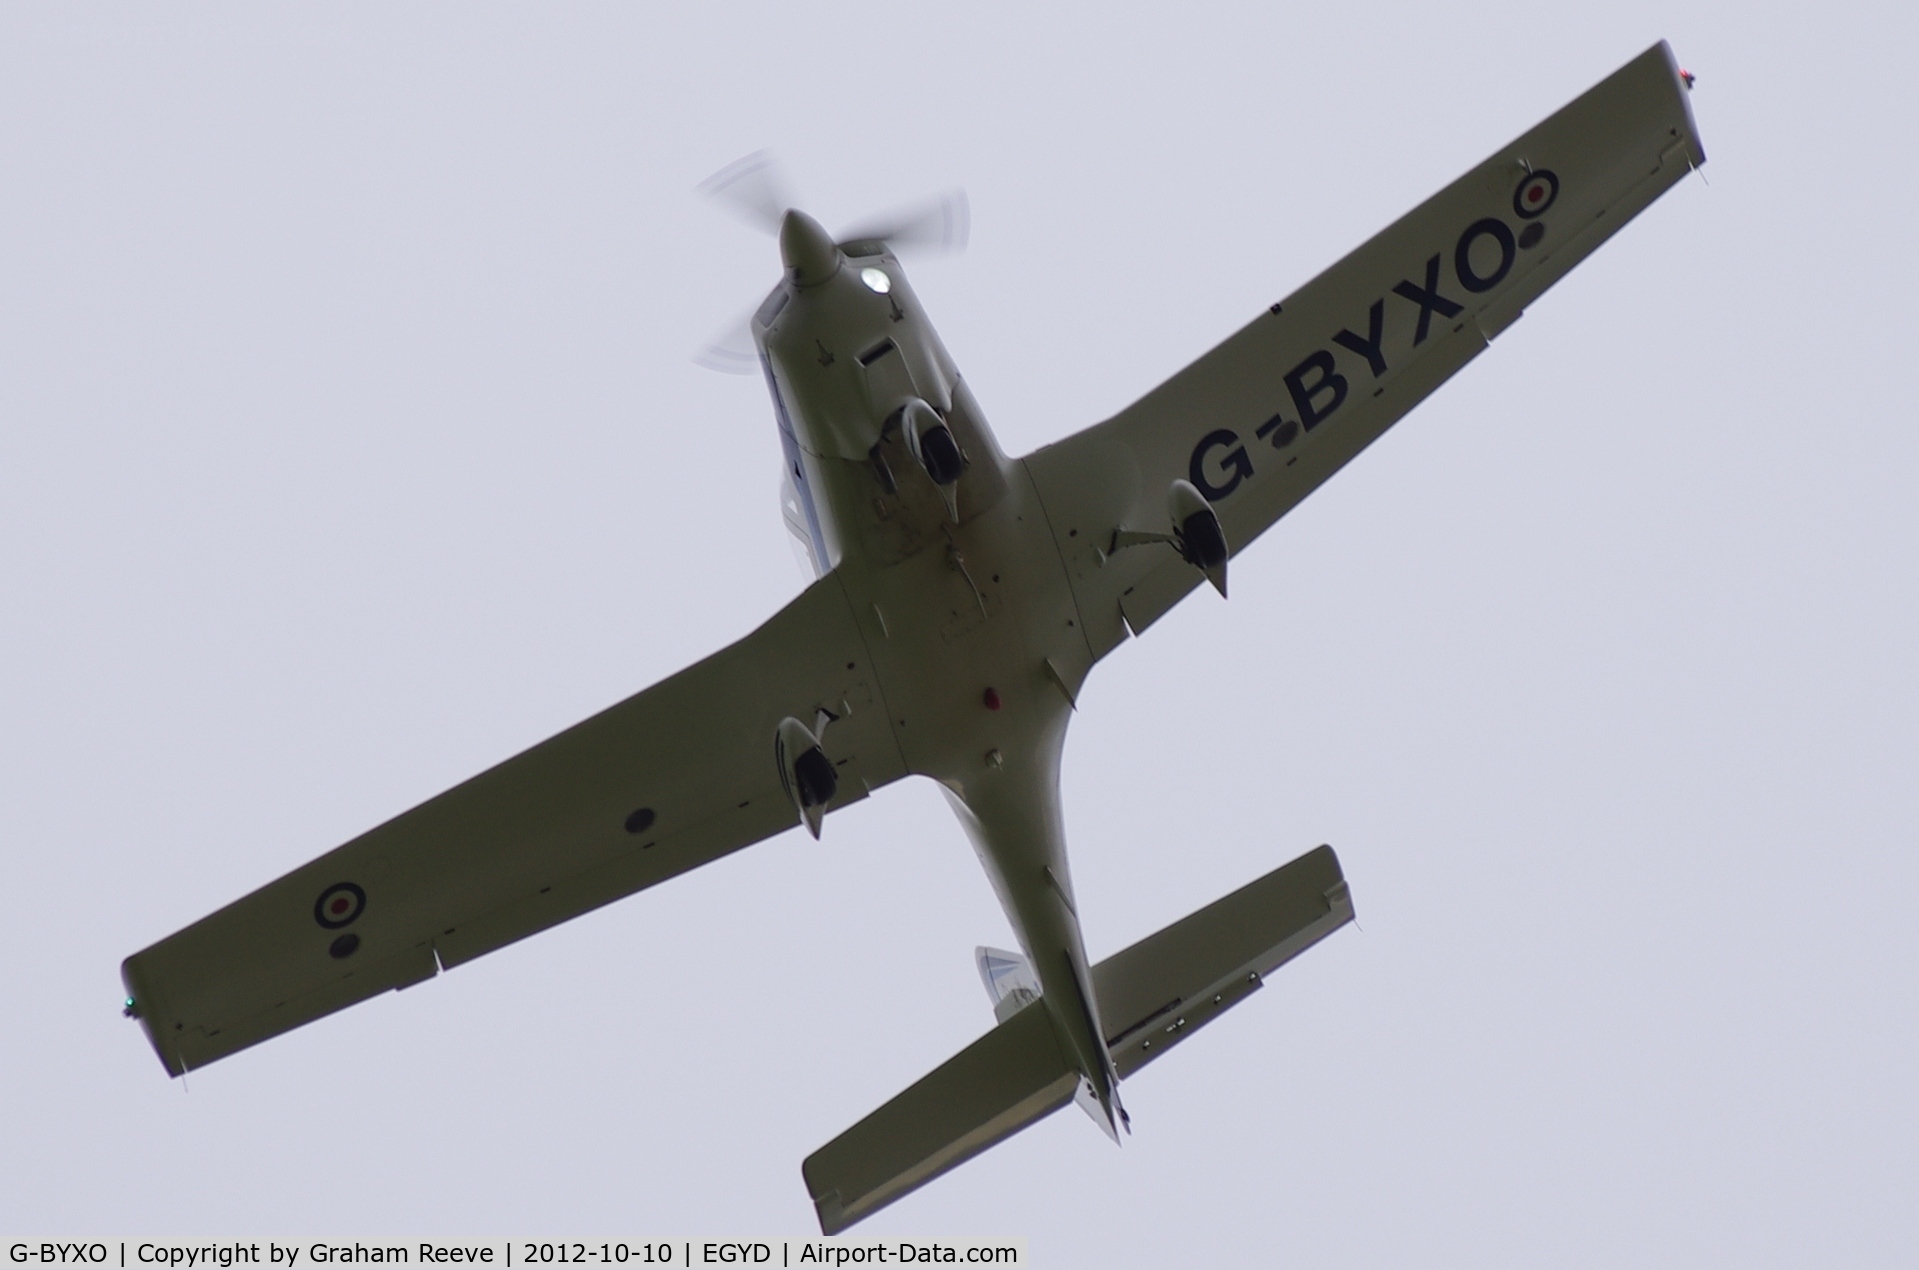 G-BYXO, 2001 Grob G-115E Tutor T1 C/N 82175/E, Coming in to land.